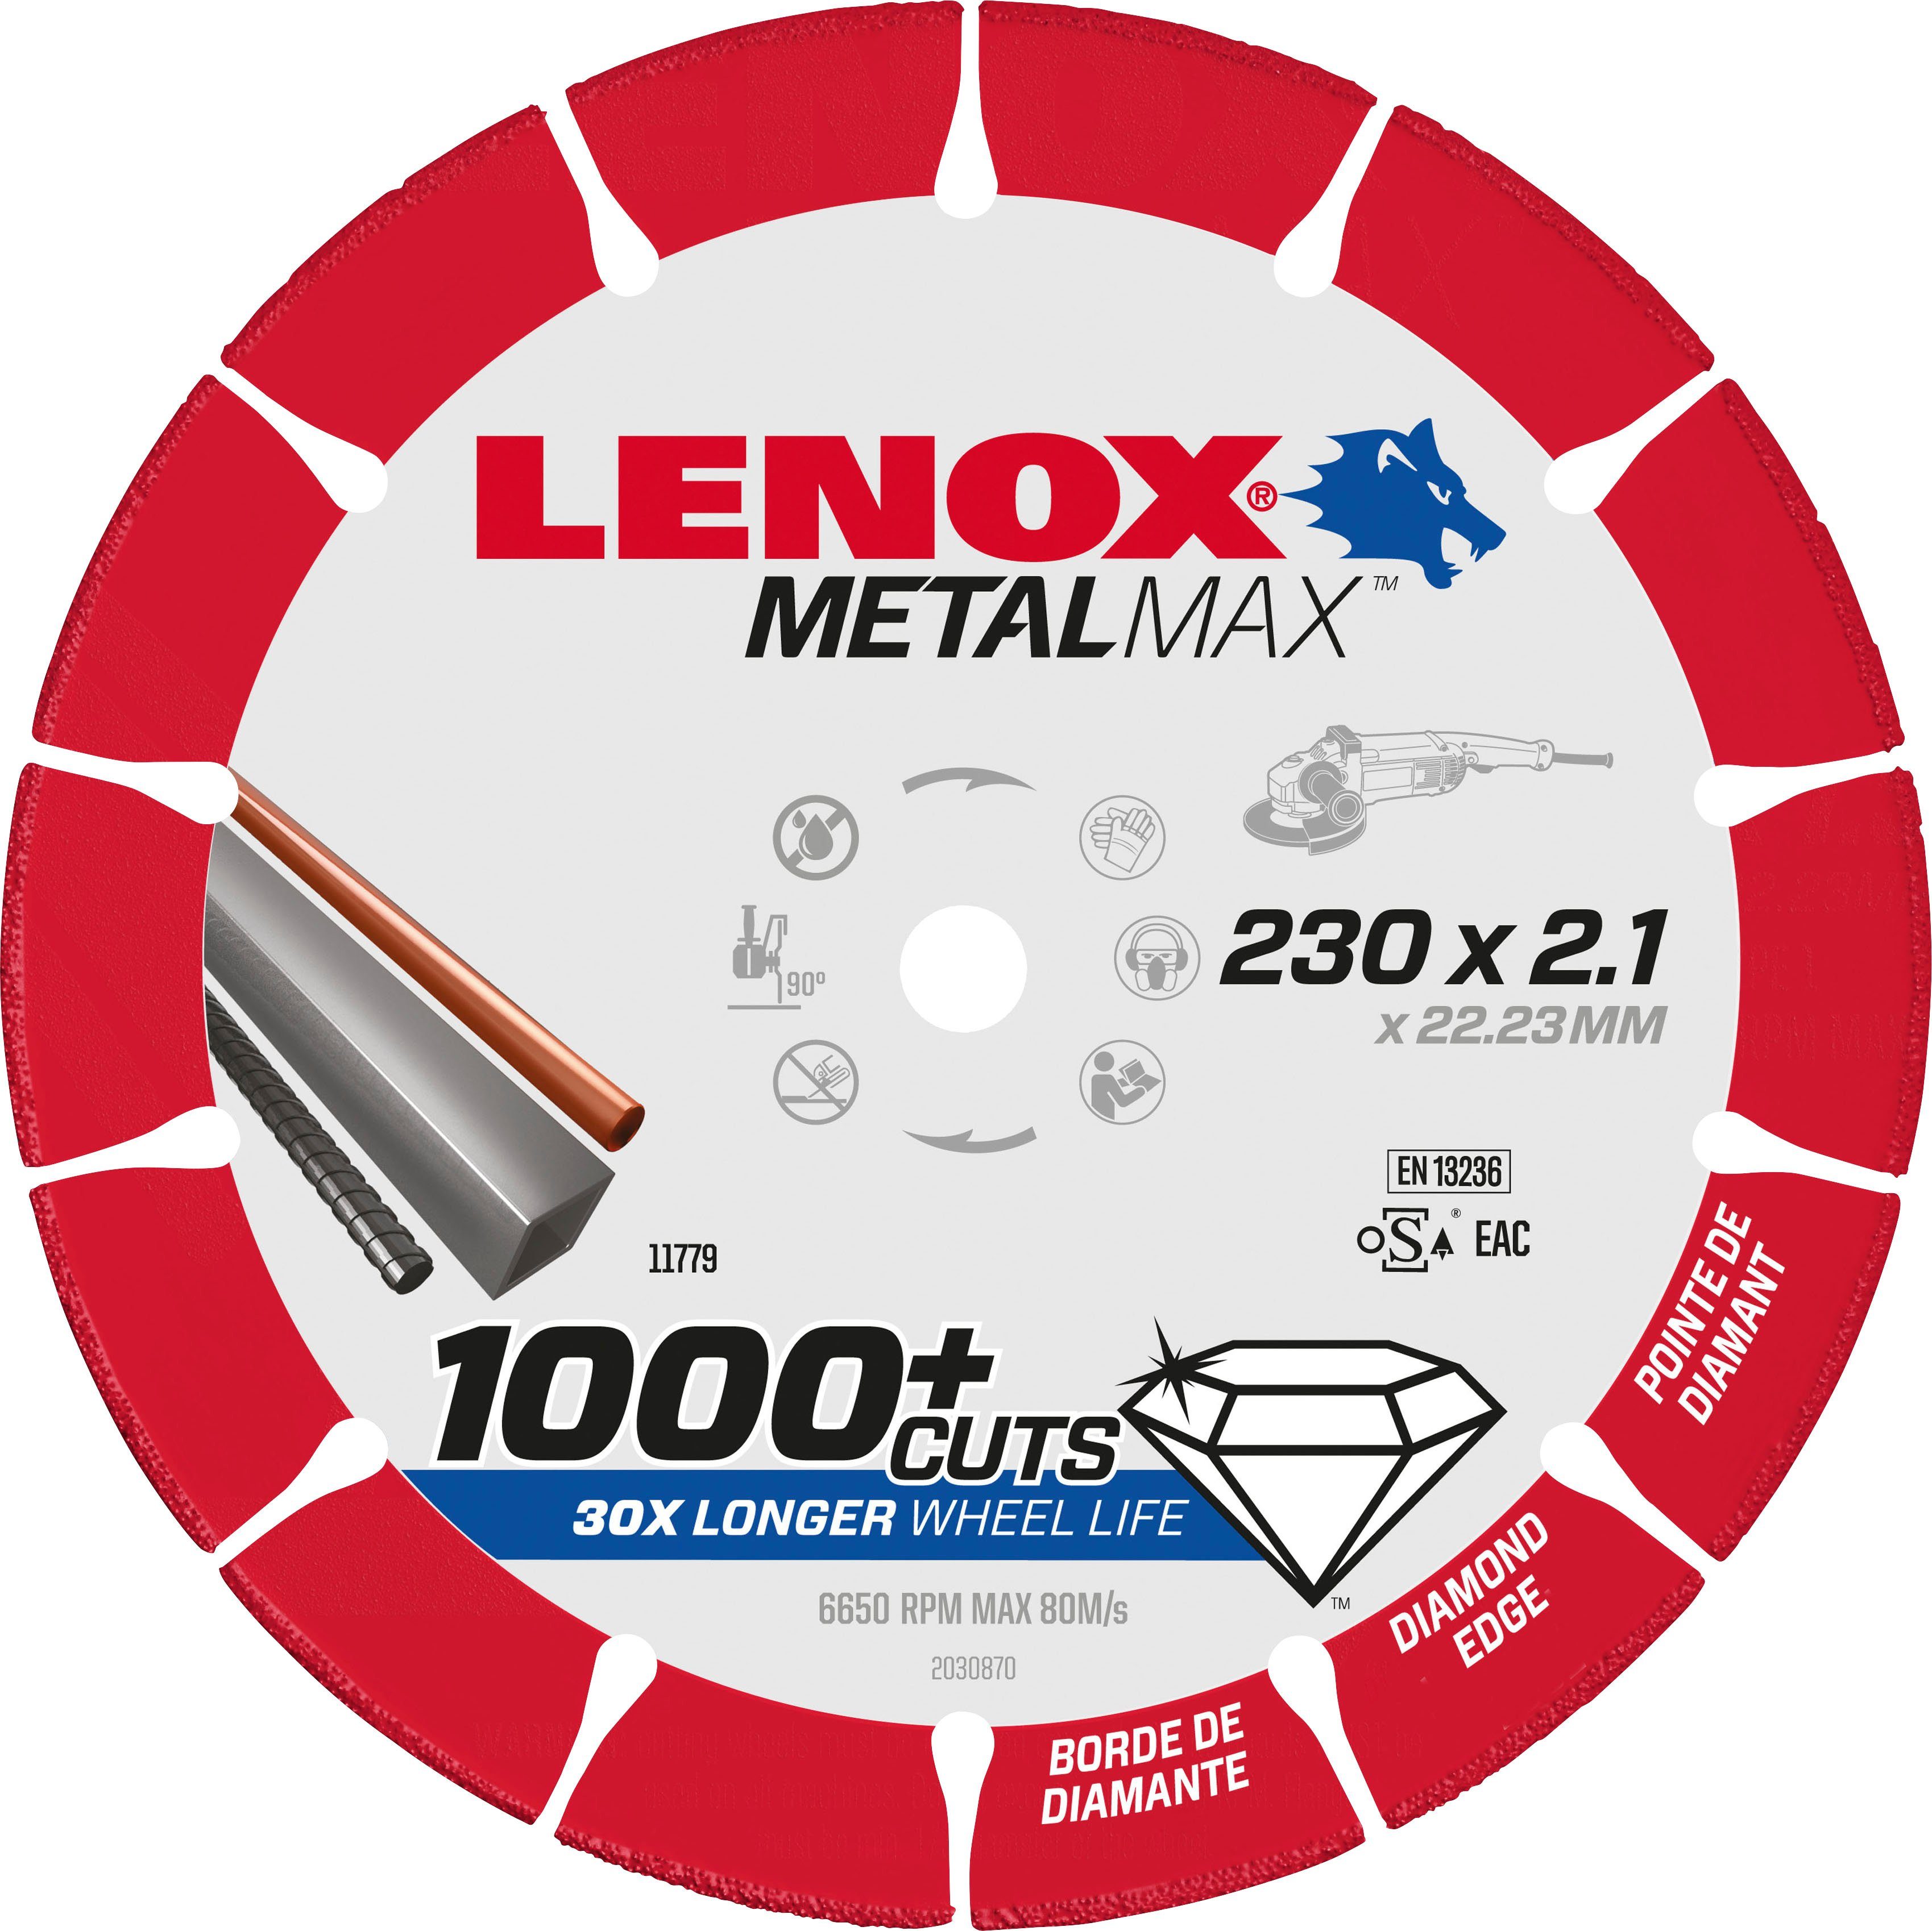 Lenox Diamanttrennscheibe 2030870 | Trennscheiben